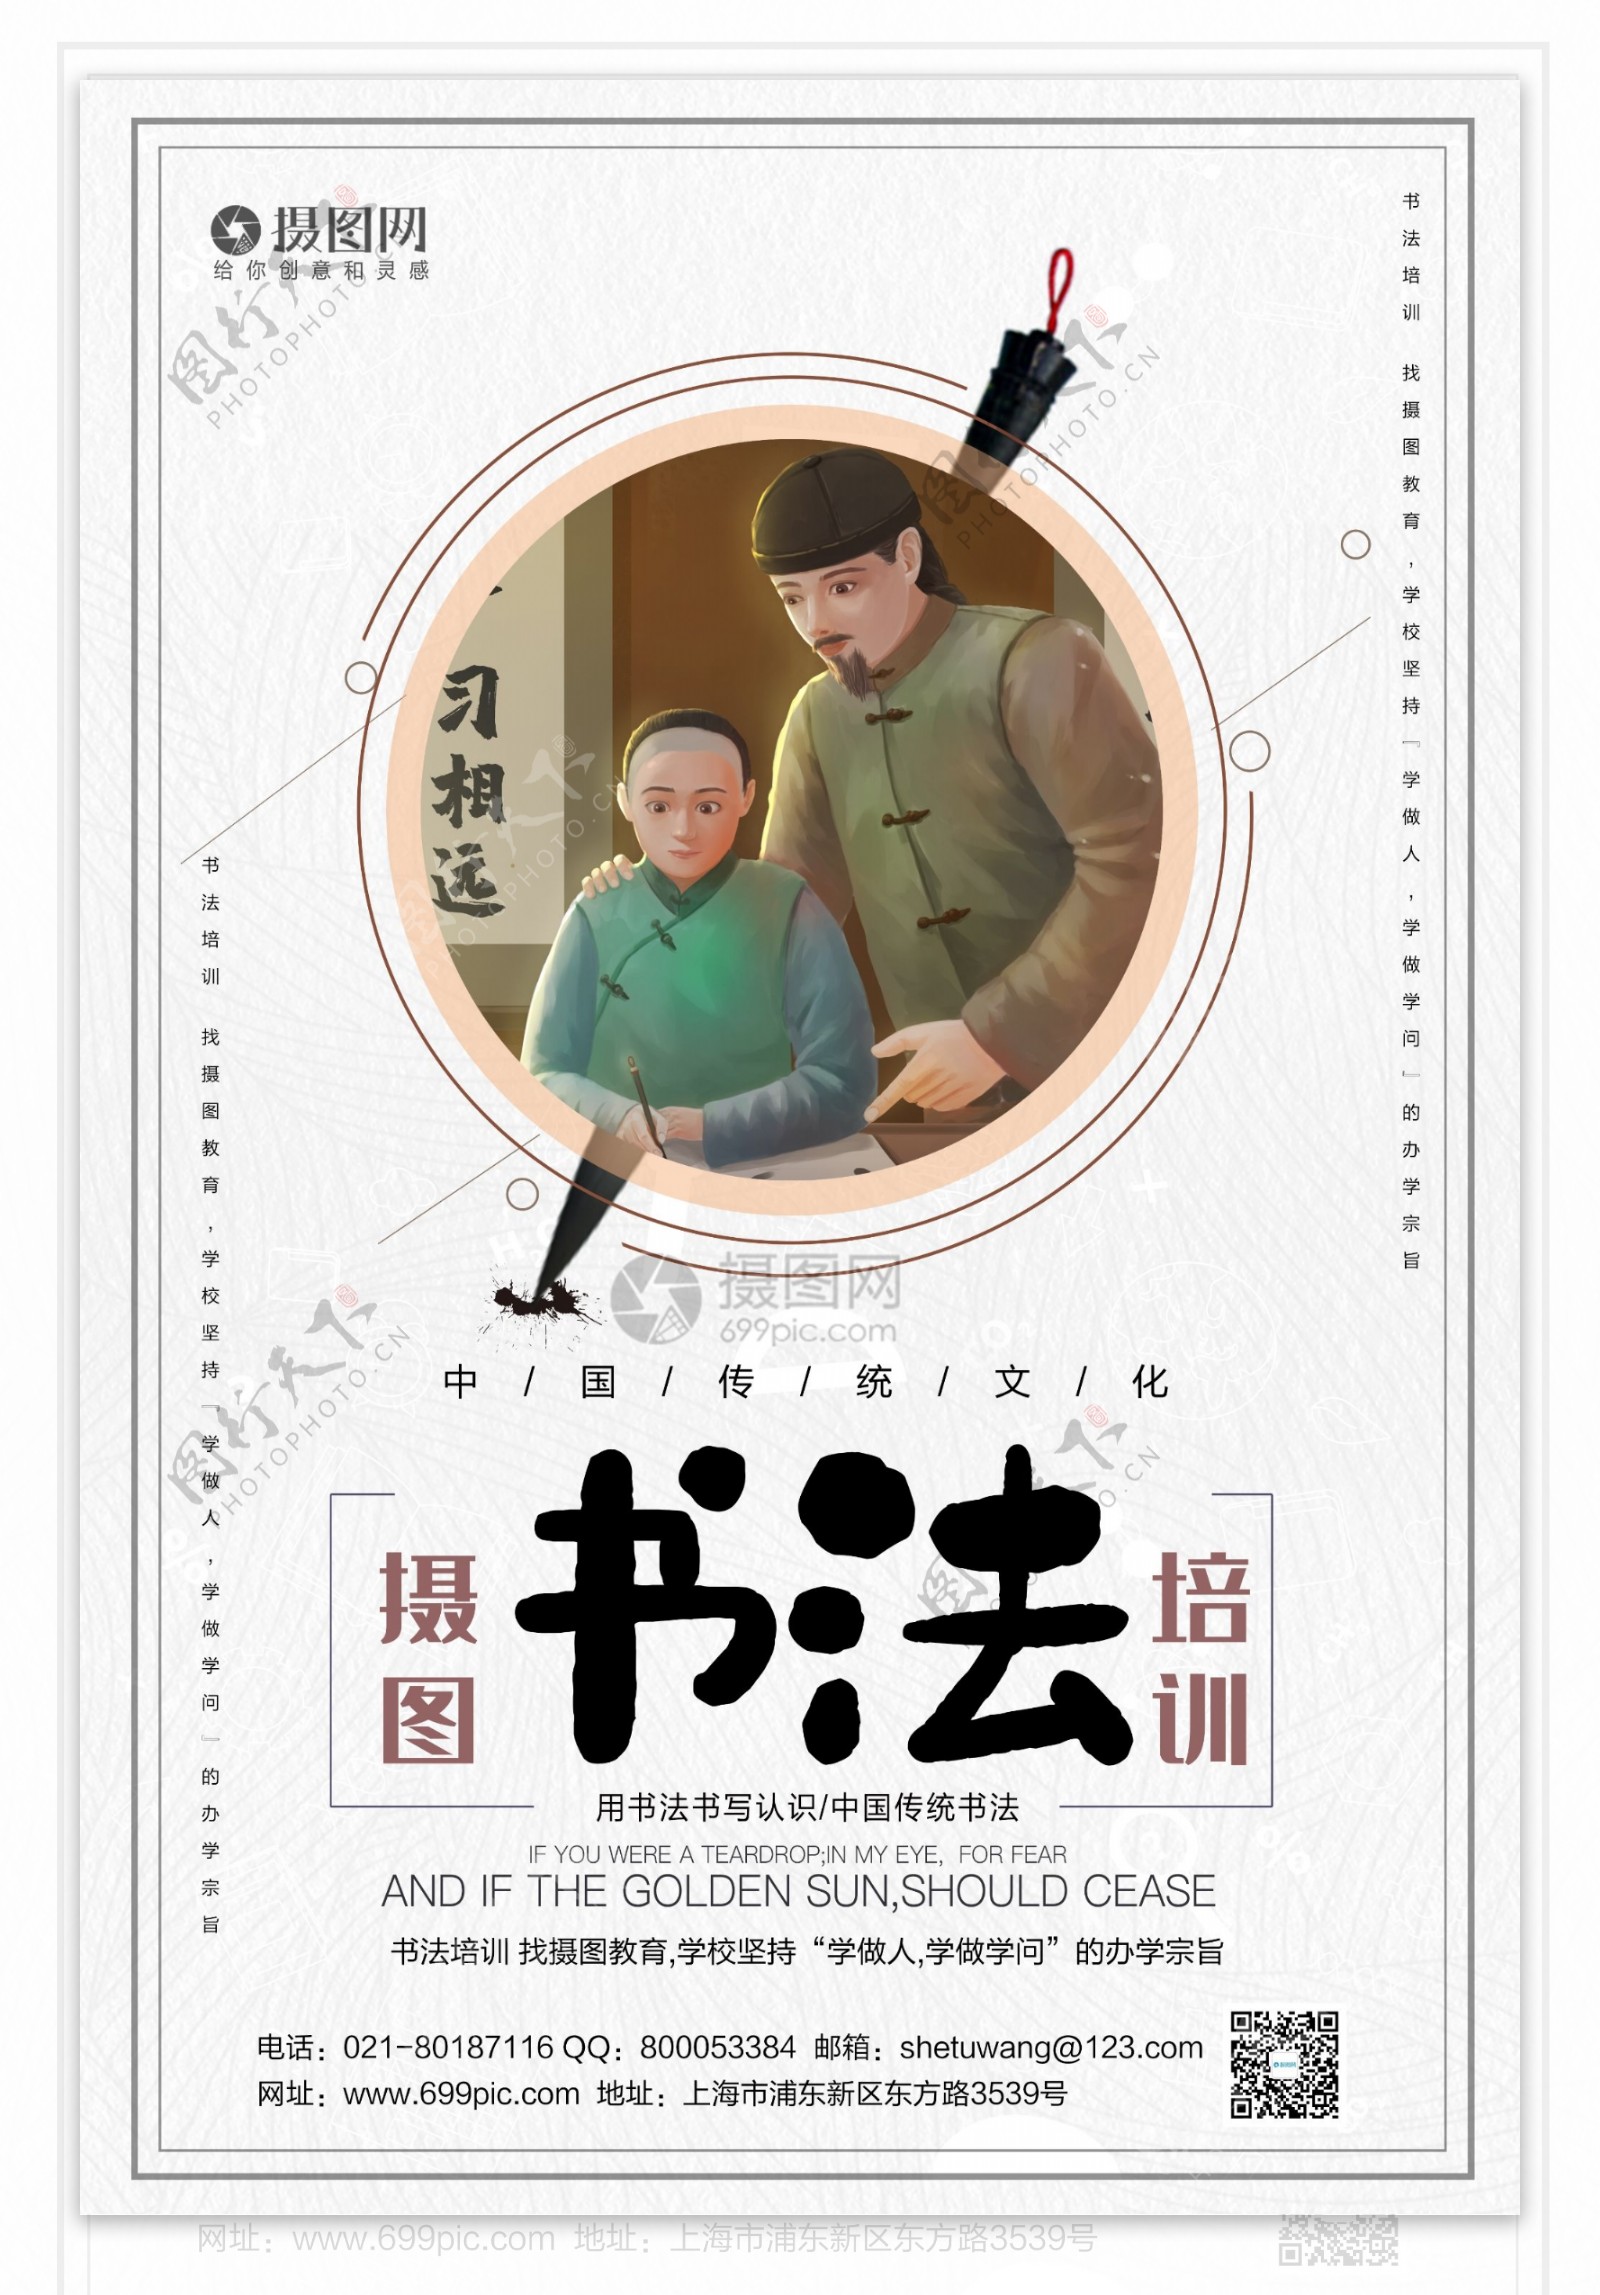 中国风书法培训宣传海报模板